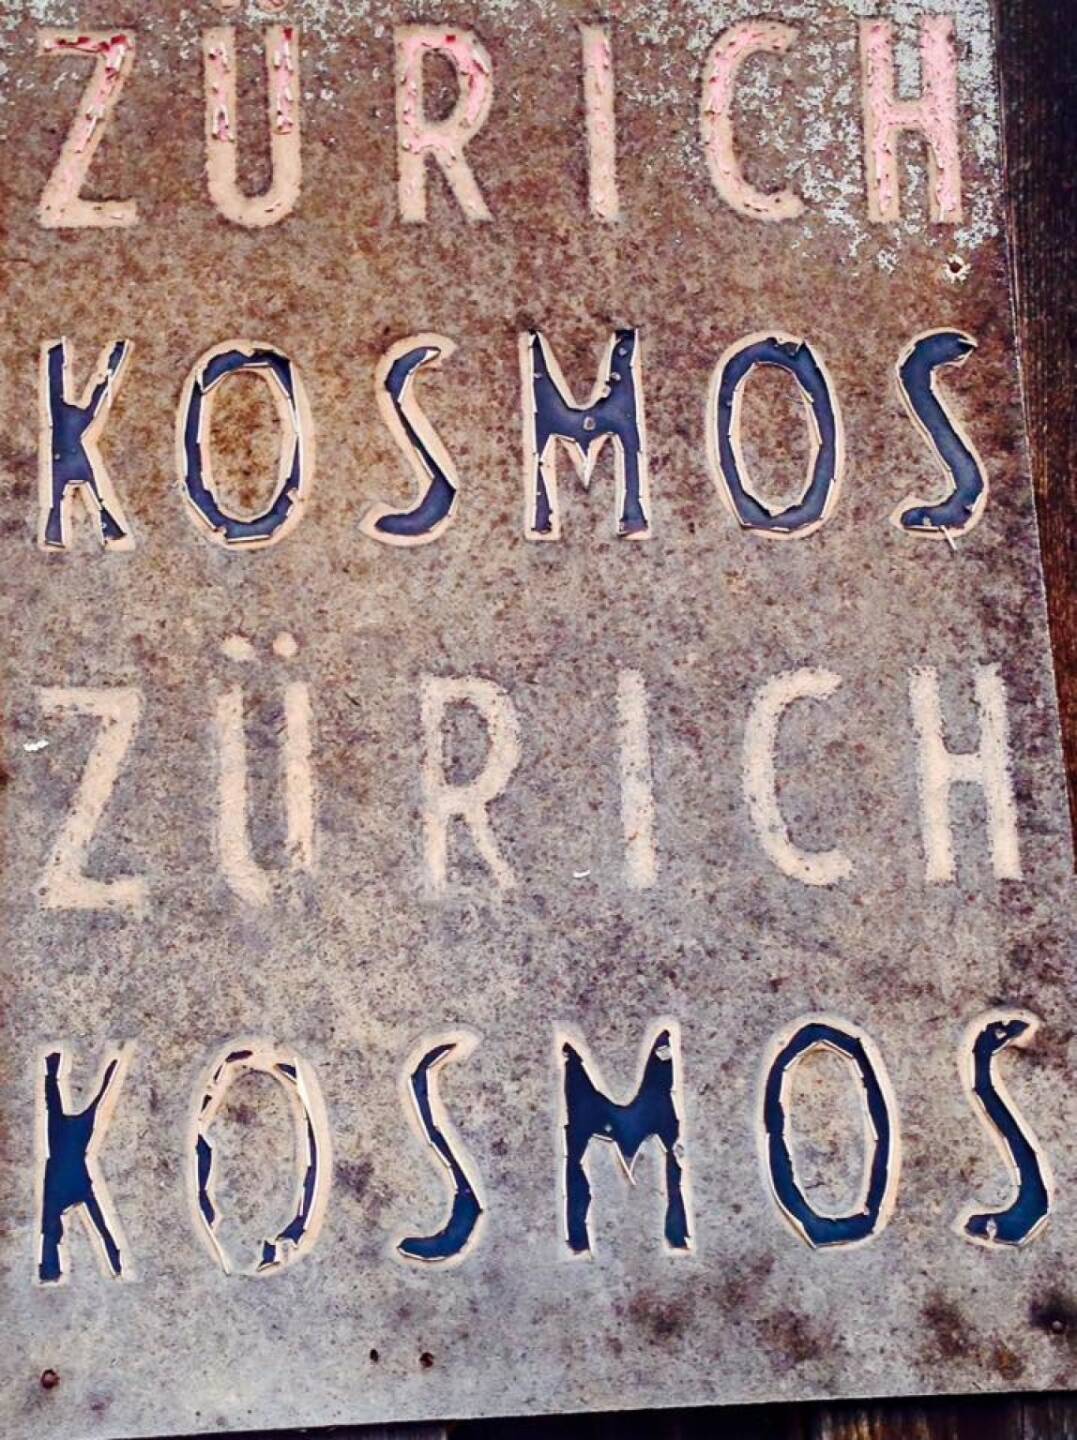 Zürich Kosmos